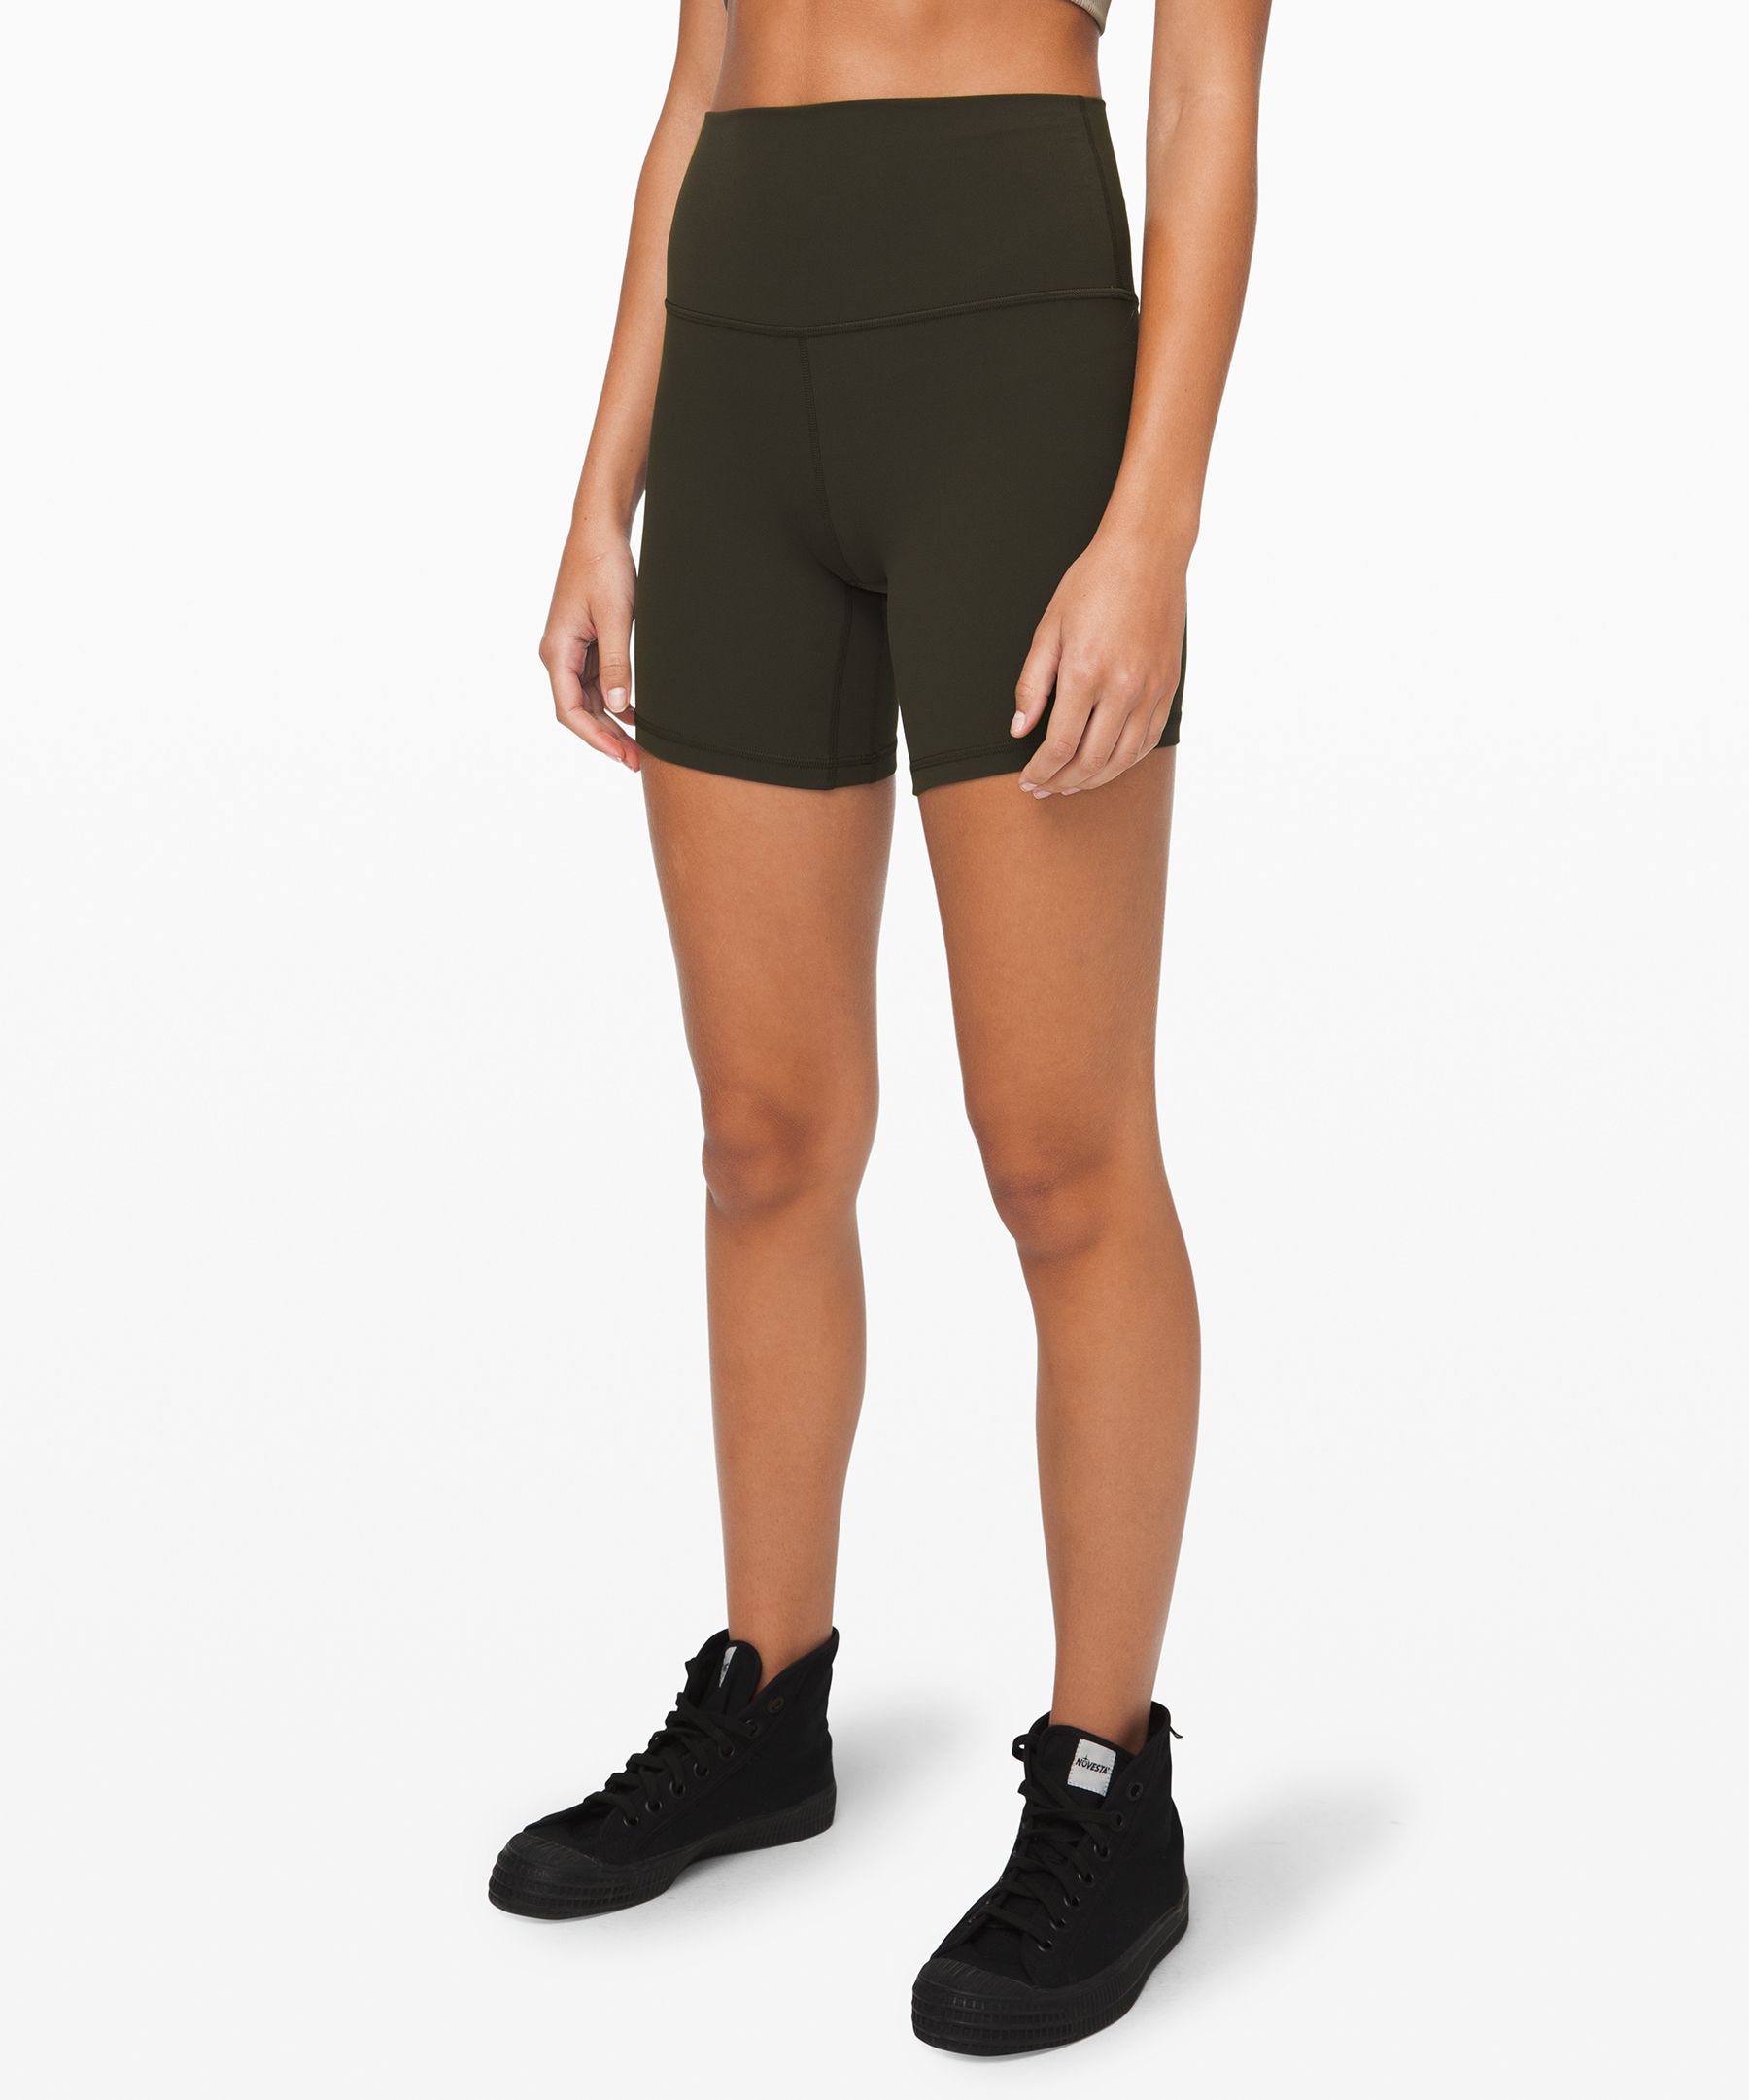 Lululemon Align™ High-rise Shorts 6" In Dark Olive